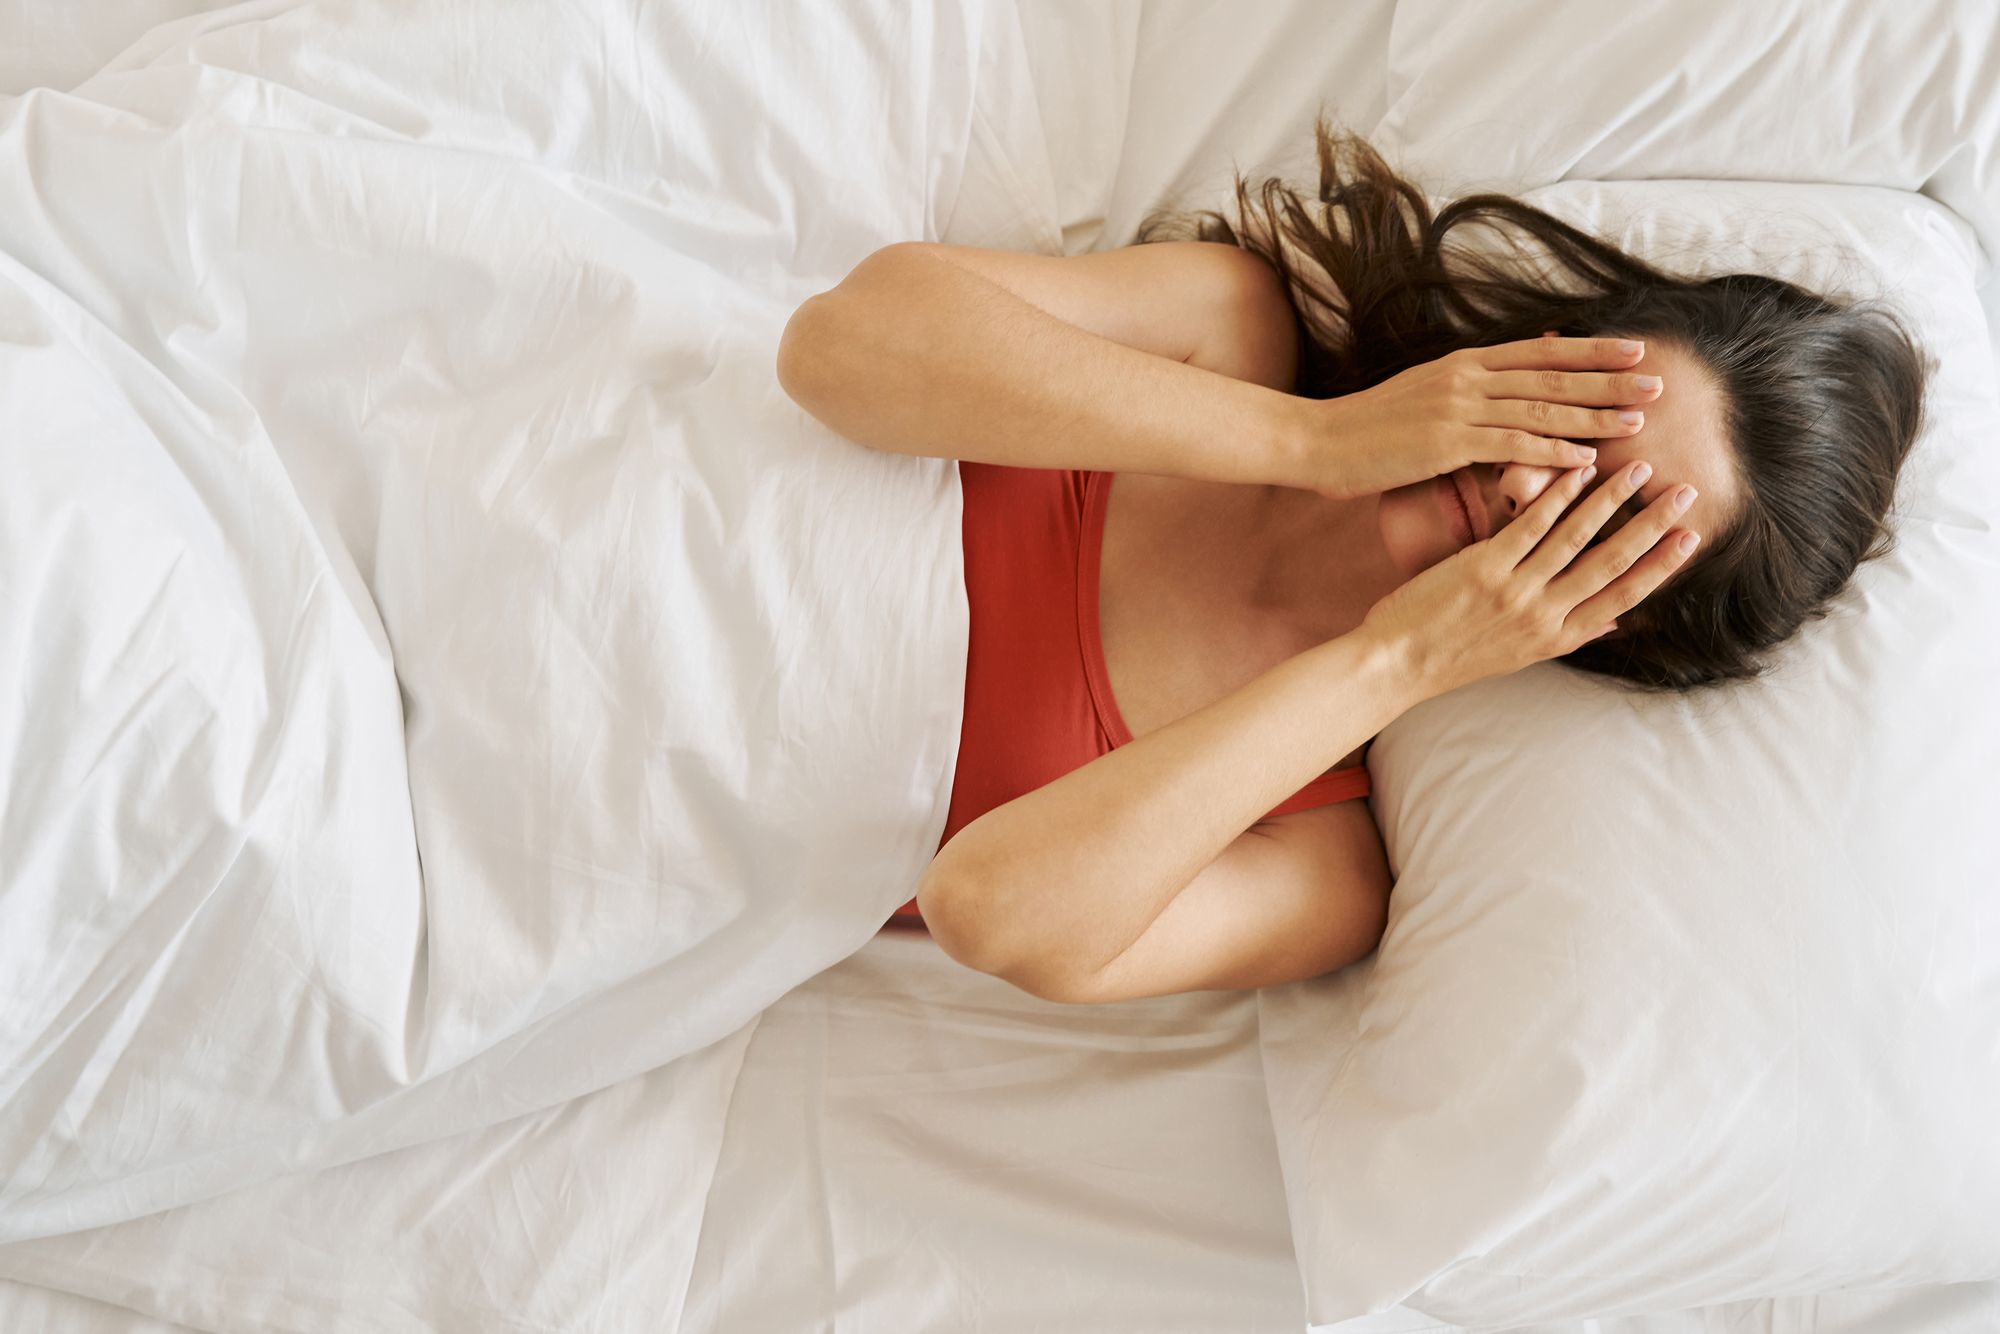 Five weird signs of sleep apnea